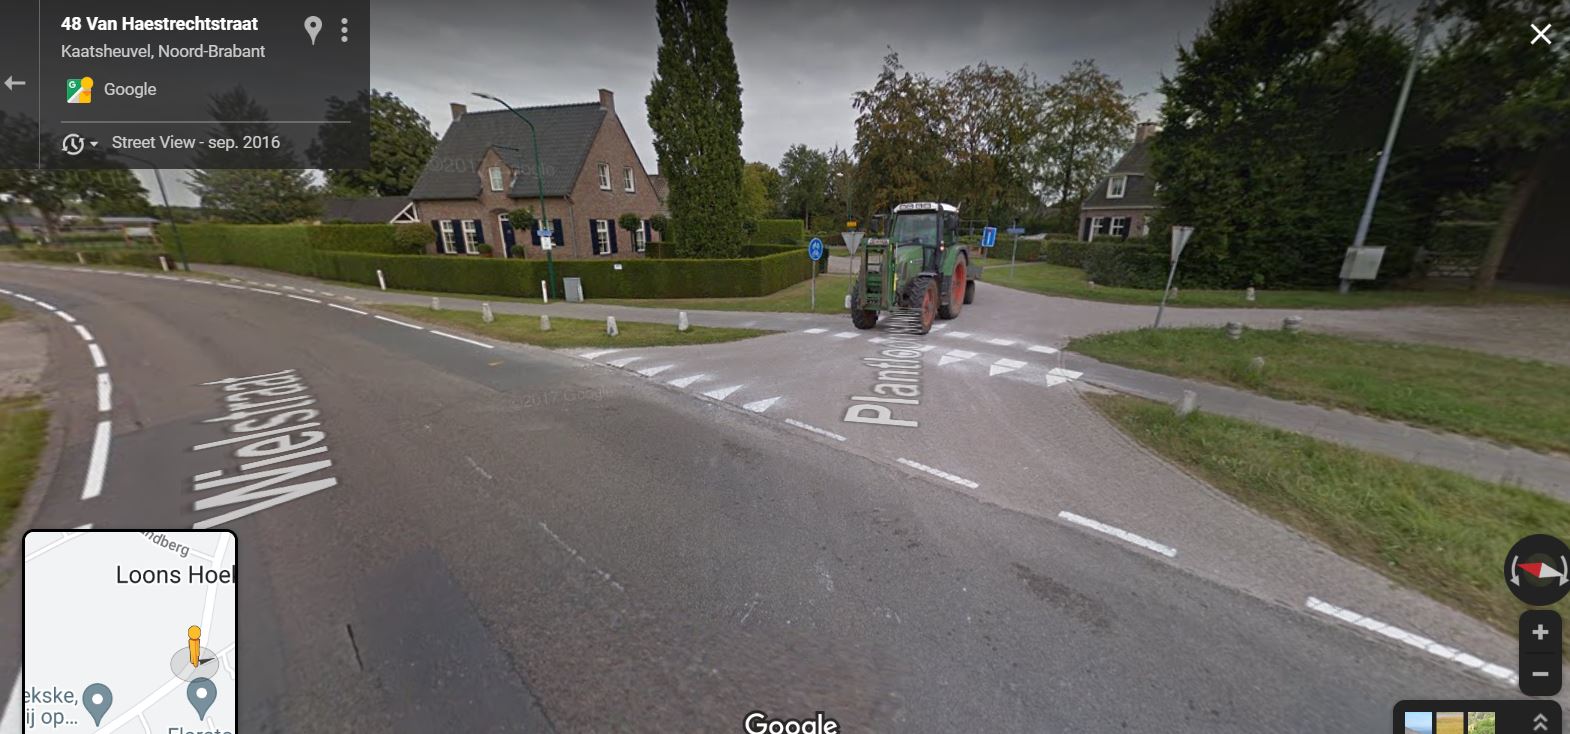 kaatsheuvel__wijk_t_hoekje__kruispunt_van_haestrechtstraat__wielstraat__plantloon_-_google_maps_streetview-_opname_sept._2016.jpg